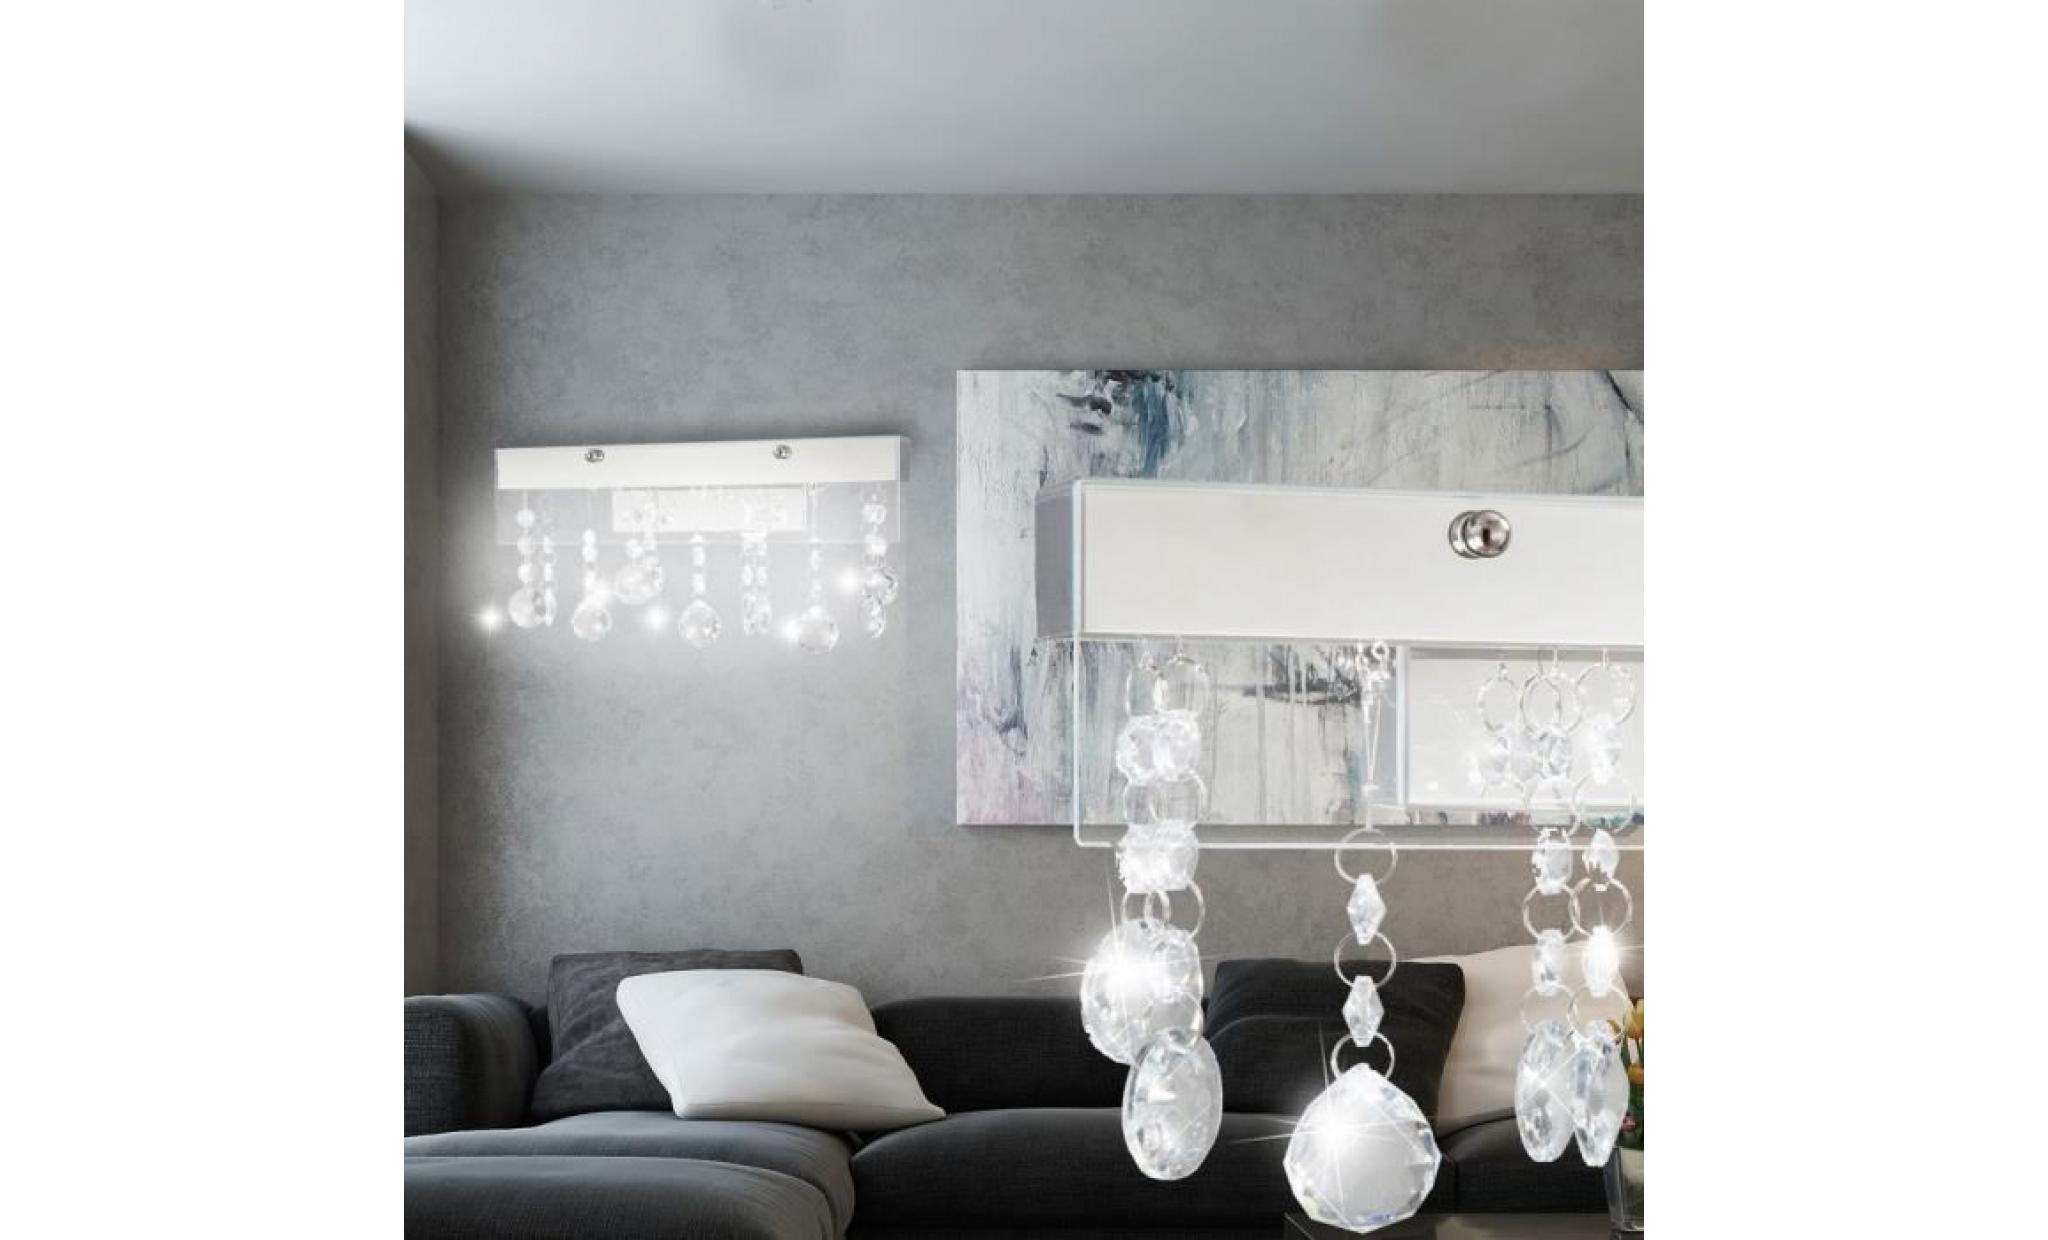 Applique SMD LED 8 Watts luminaire mural lampe verre cristal éclairage chrome salle de séjour pas cher